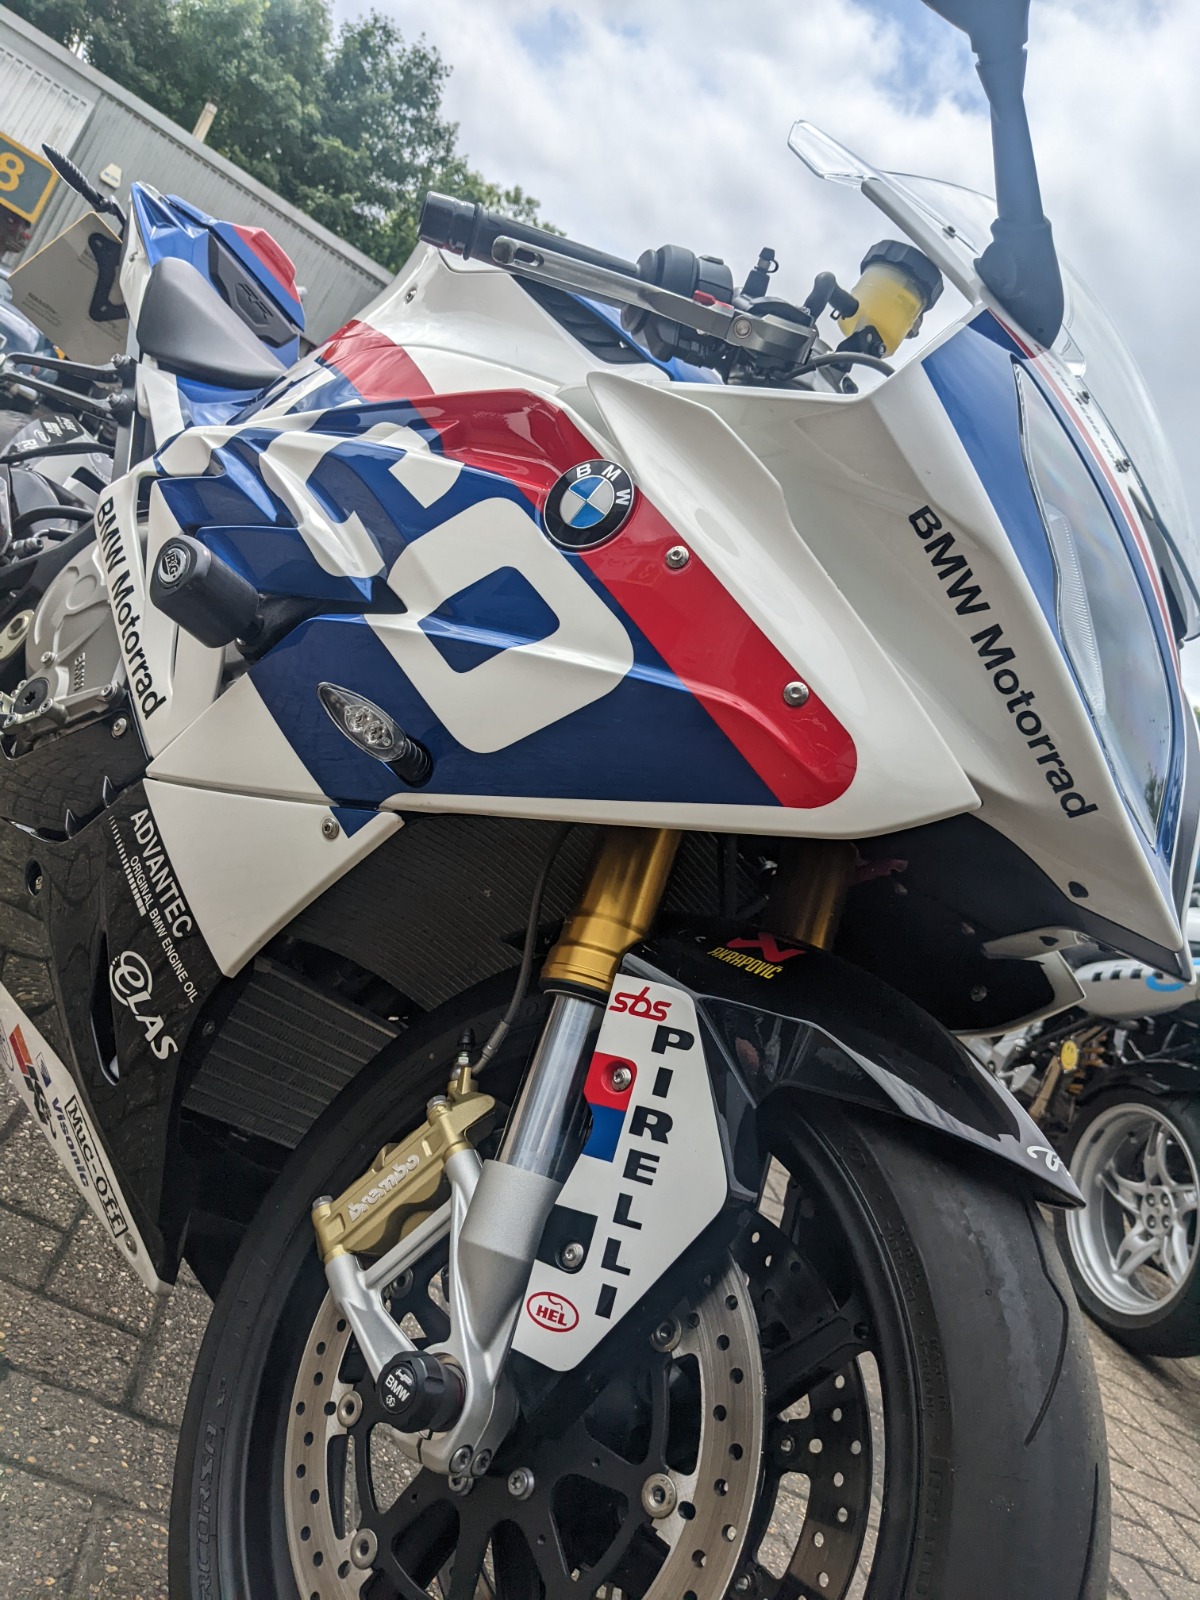 BMW Motorbike Repairs Brentford And West London